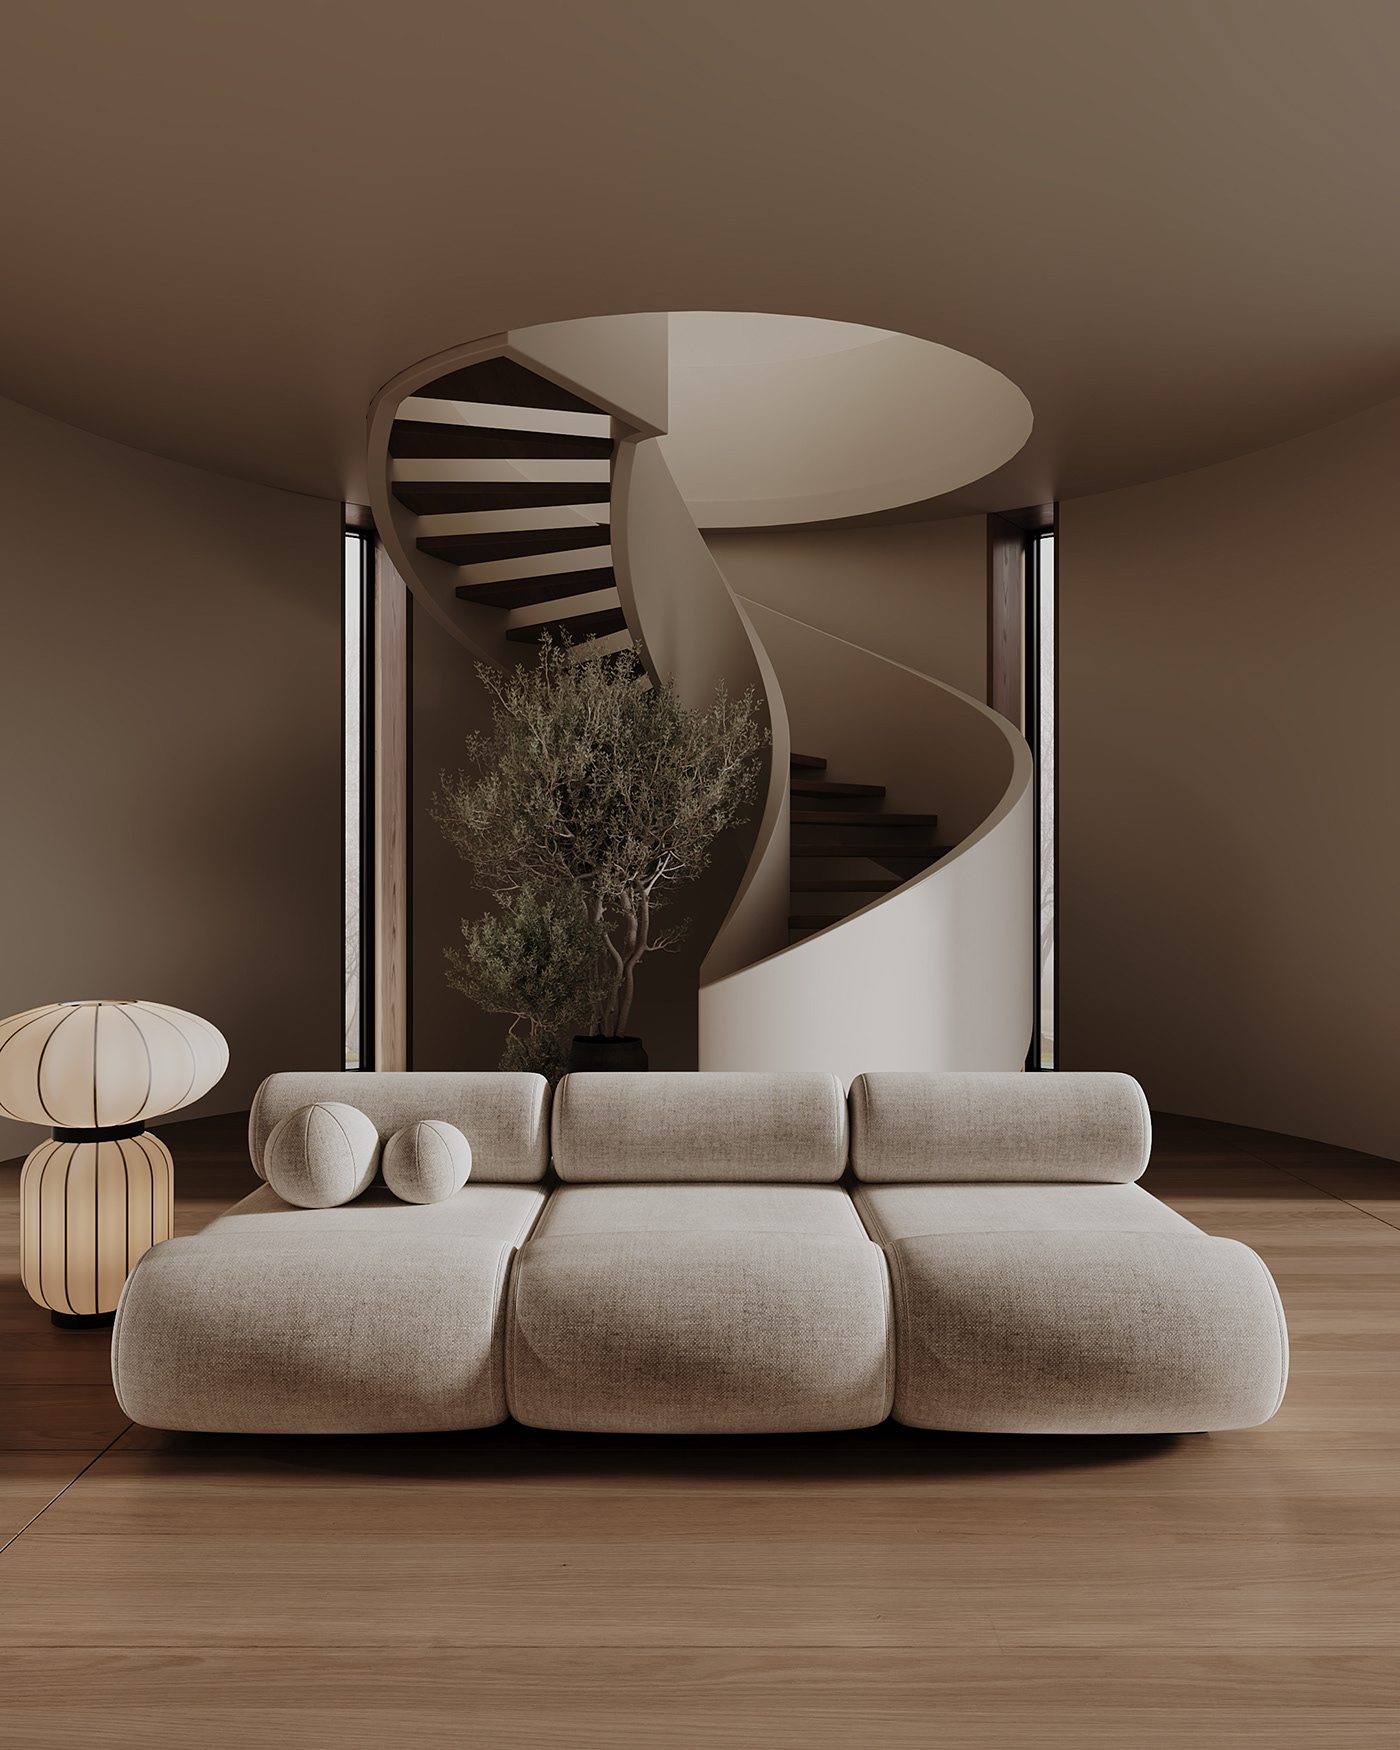 CGI 3ds max visualization Render modern architecture Interior interior design  corona design